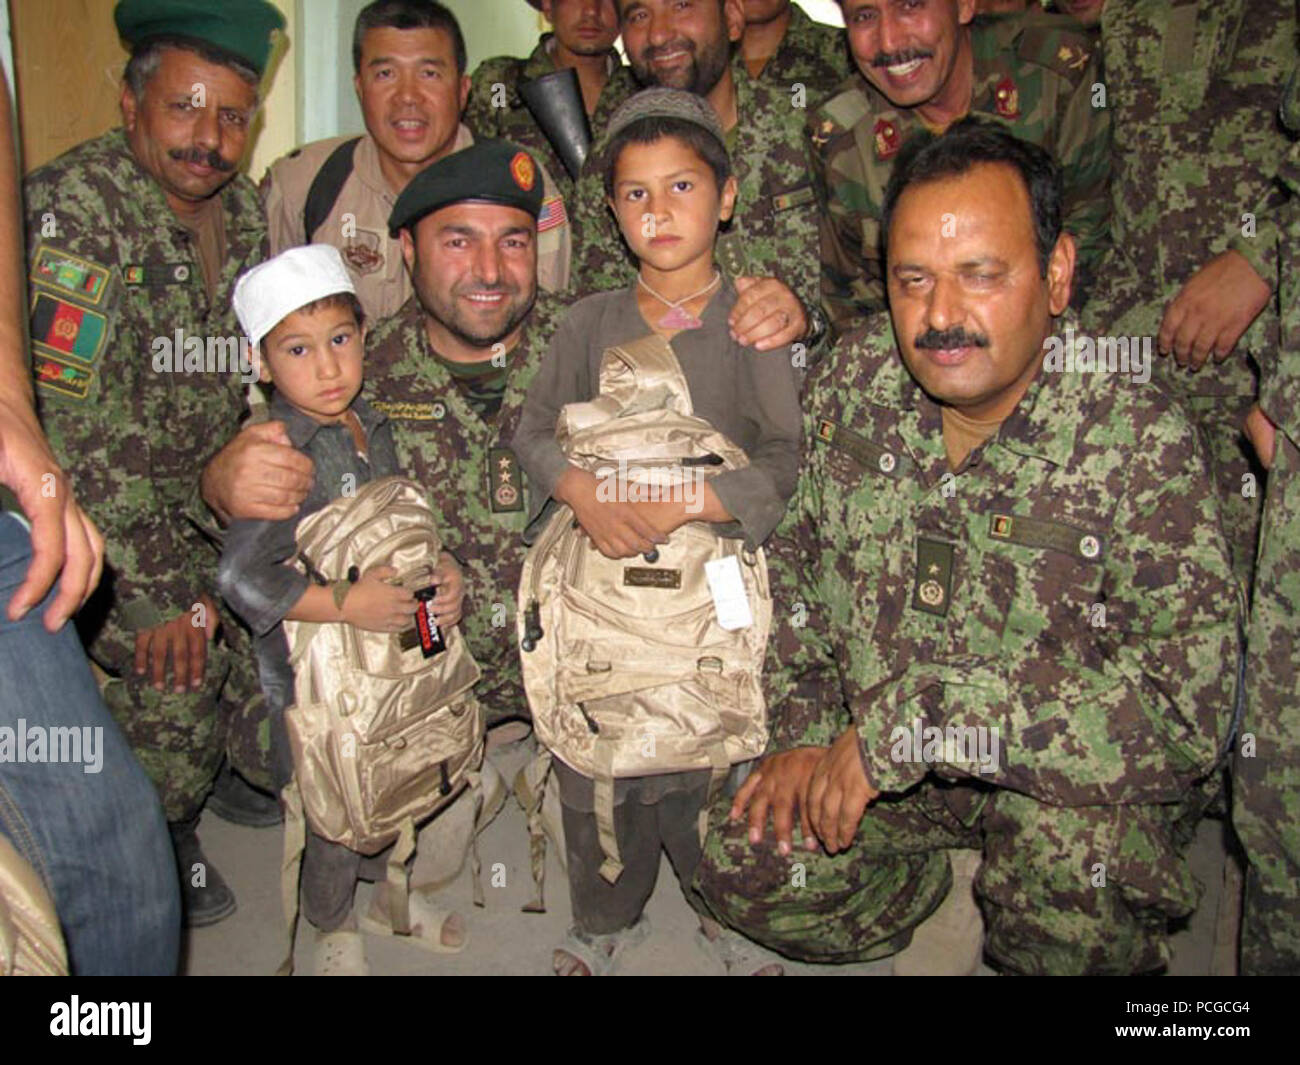 Afghan Air Force et soldats de l'Armée nationale afghane de la 209e Corps canadien participent à leur première mission humanitaire en distribuant des fournitures scolaires aux enfants dans un village près de Mazar e Sharif, Afghanistan, le 27 juillet, 2010 Banque D'Images